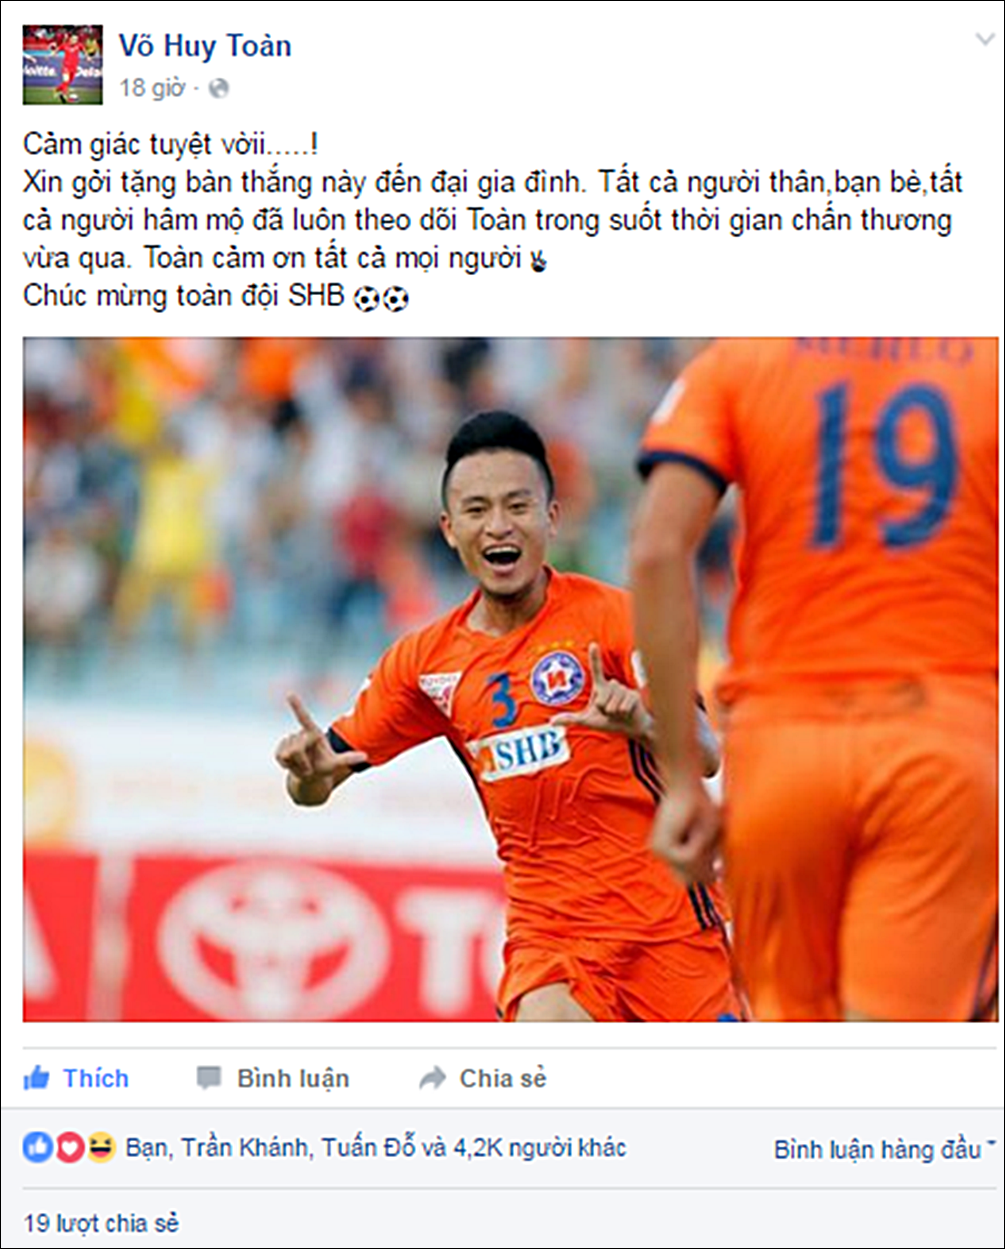 Huy Toàn gửi lời cảm ơn đến mọi người sau khi ghi bàn thắng vào lưới FLC Thanh Hóa.